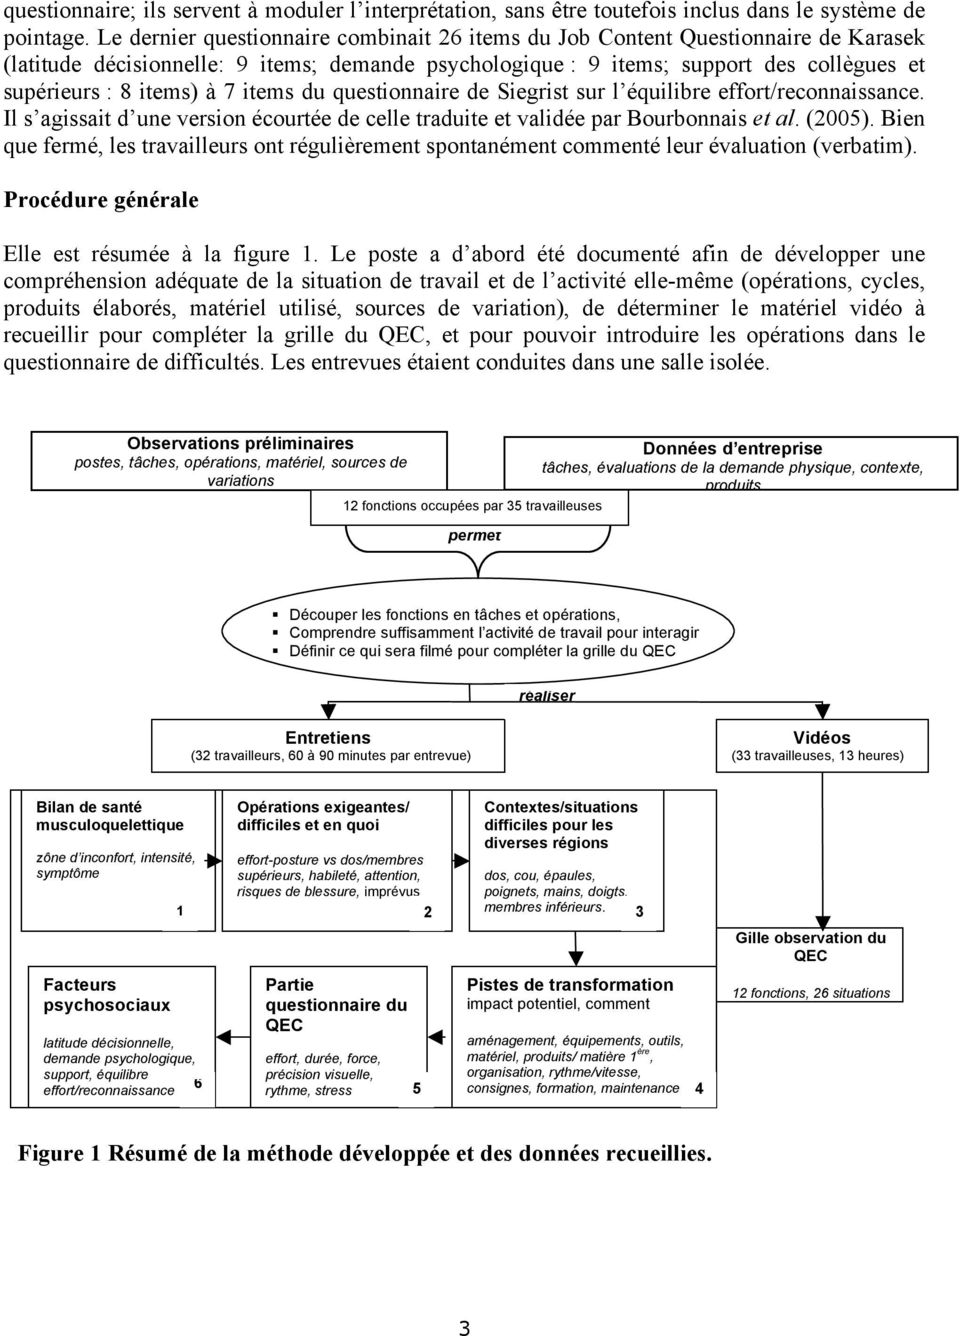 7 items du questionnaire de Siegrist sur l équilibre effort/reconnaissance. Il s agissait d une version écourtée de celle traduite et validée par Bourbonnais et al. (2005).